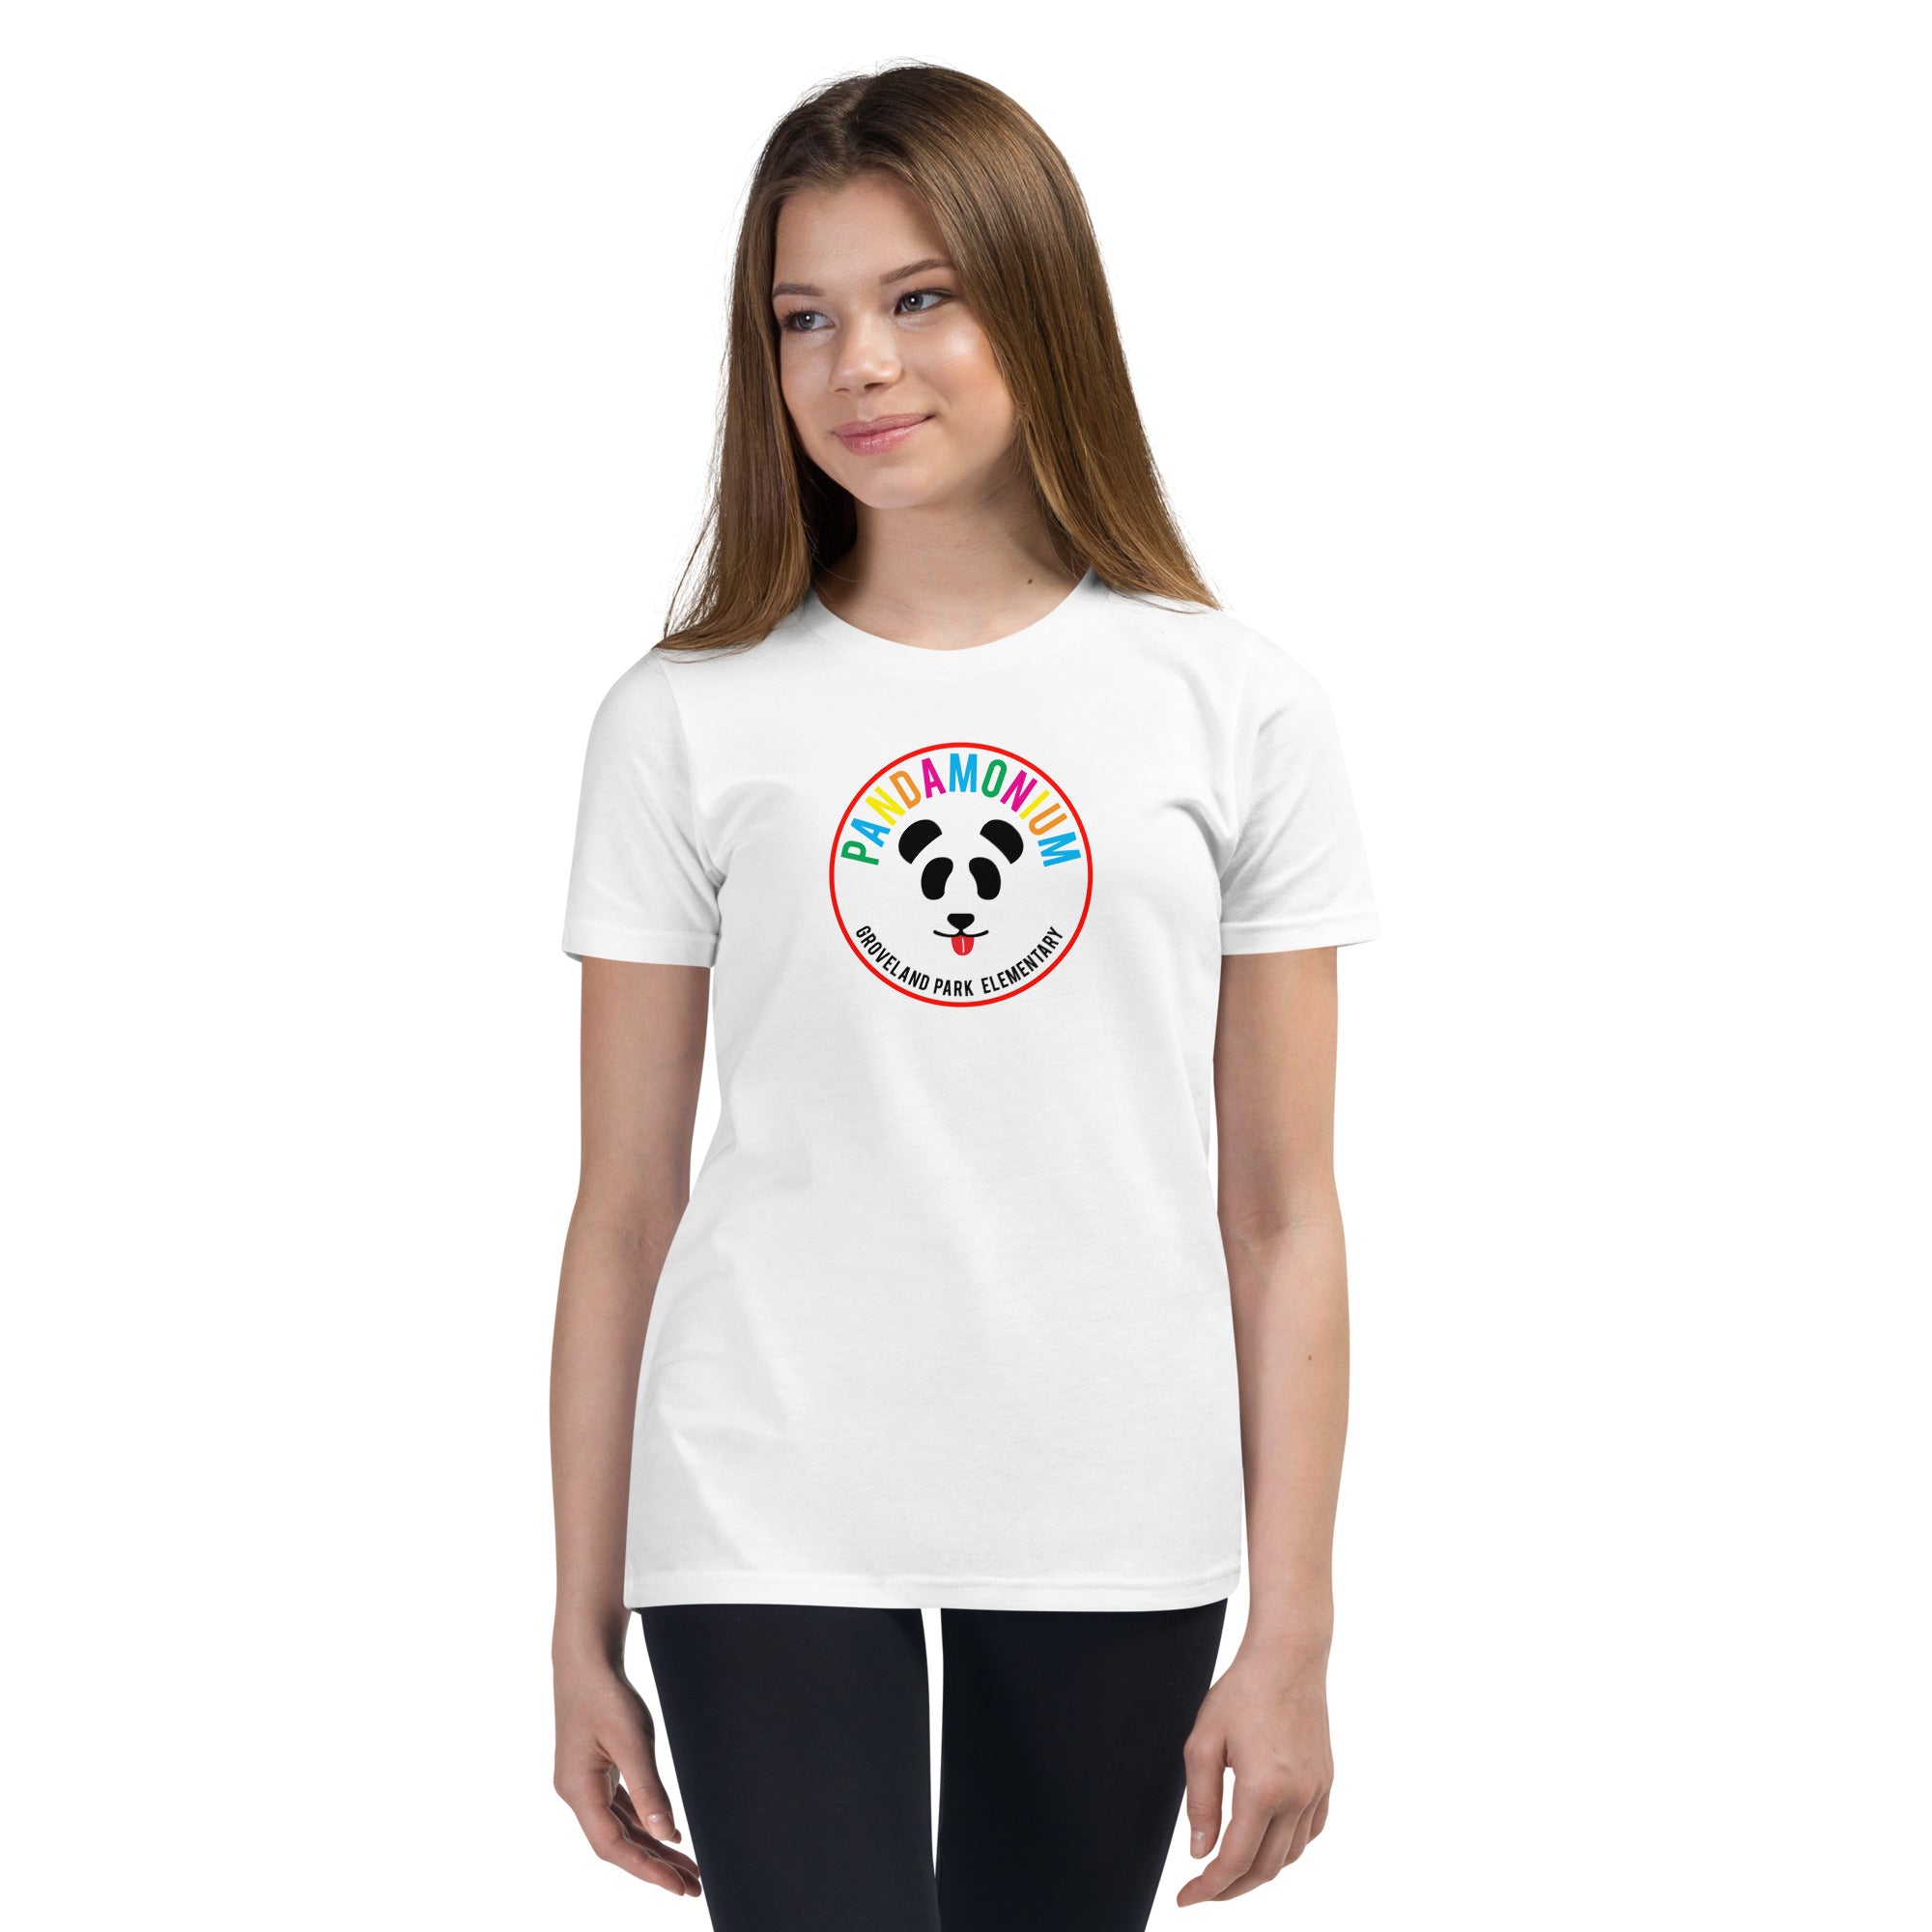 Pandamonium - Youth T-Shirt